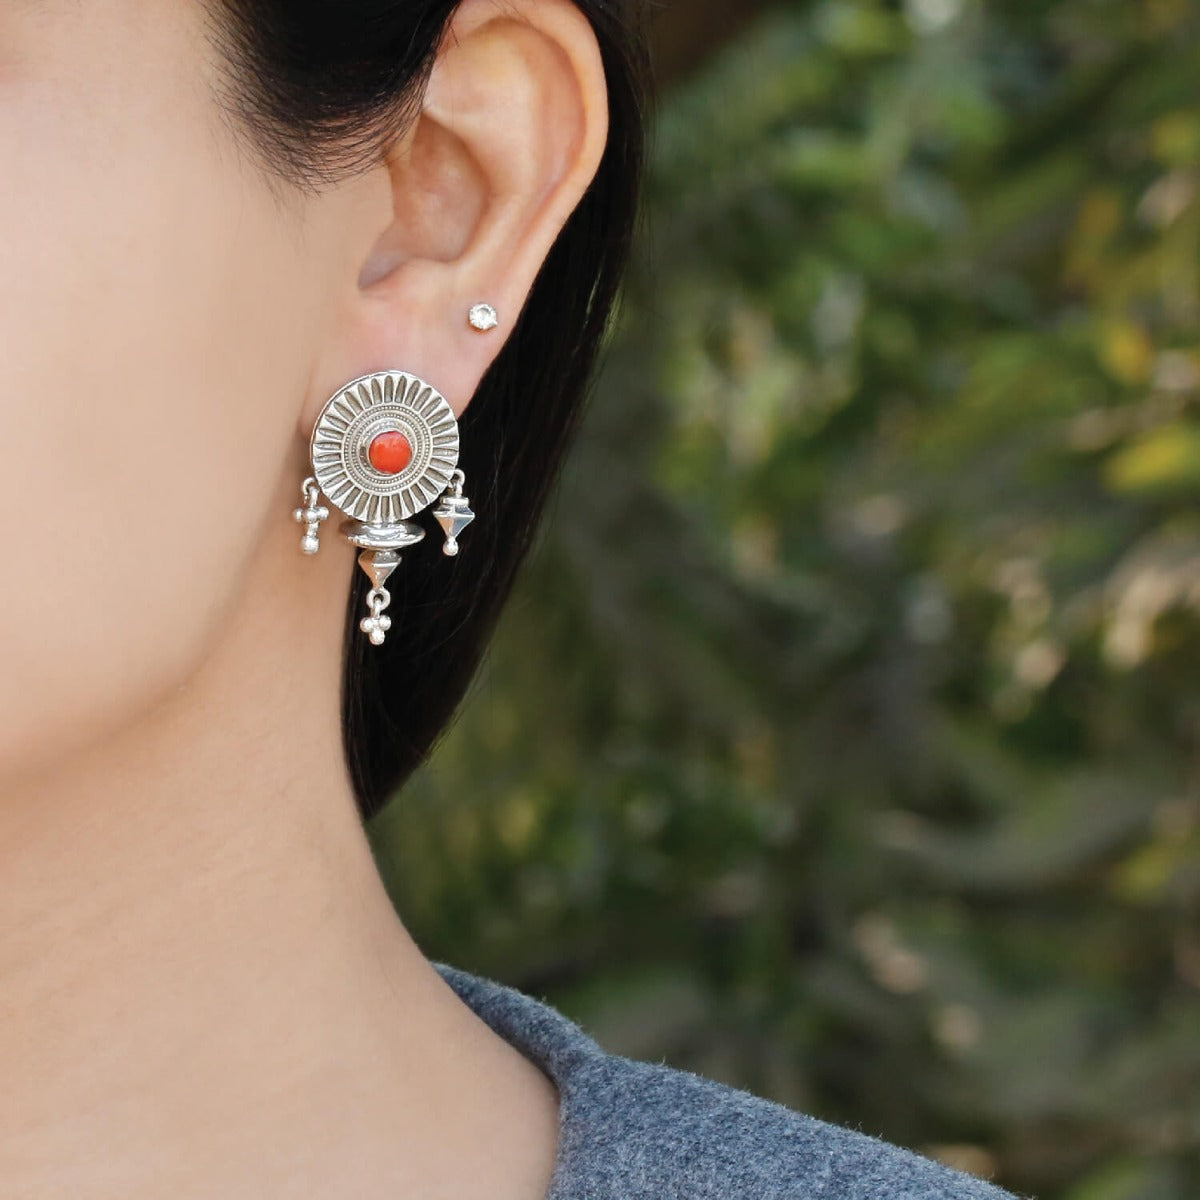  small earrings